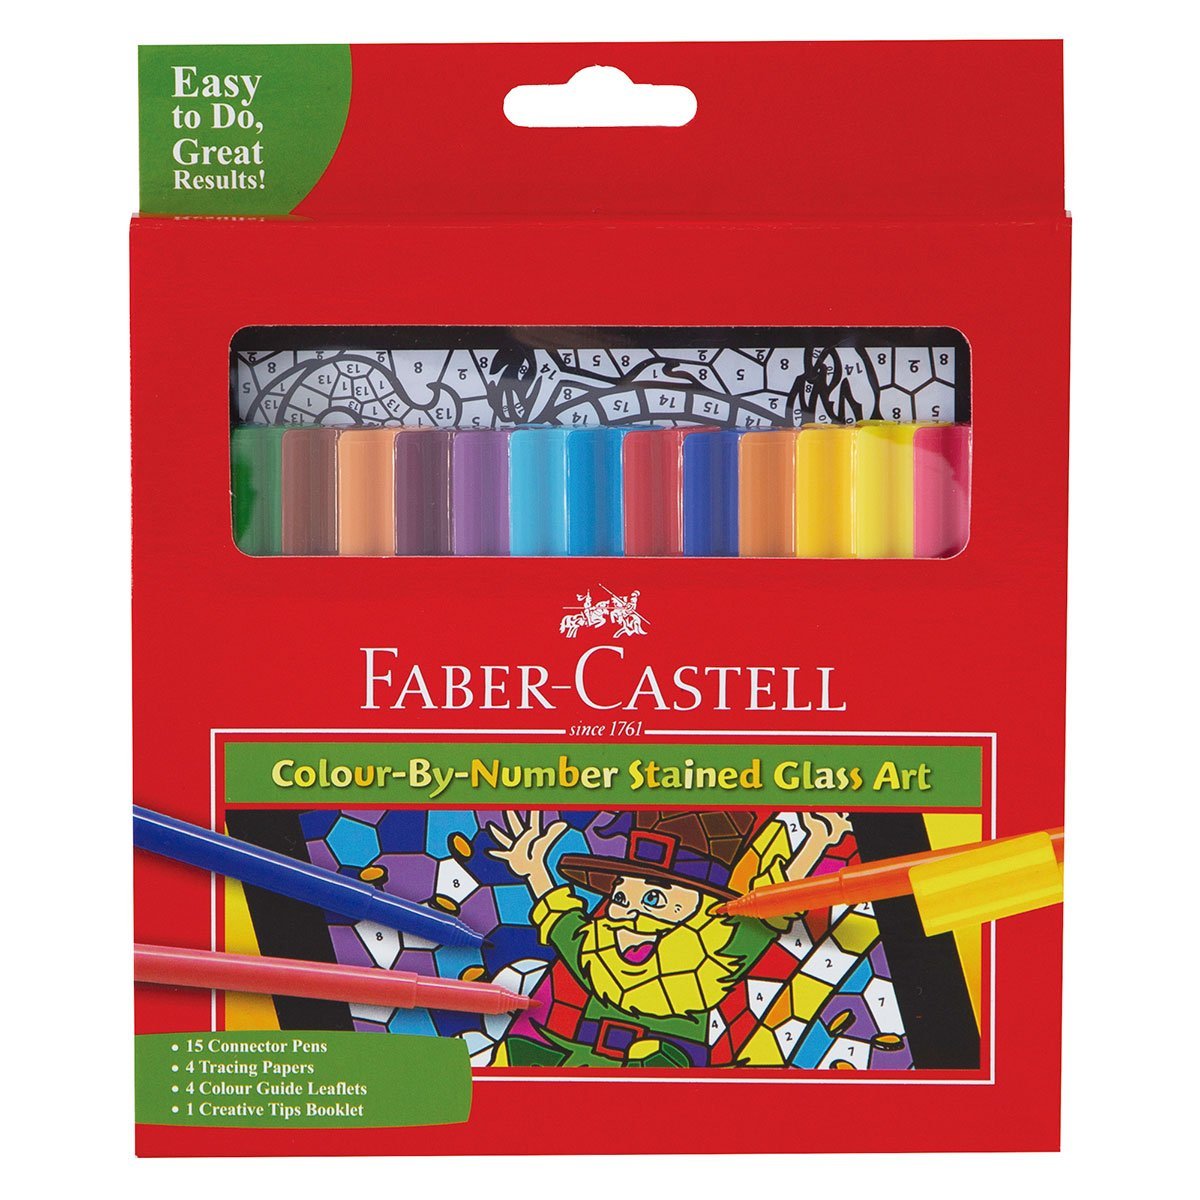 Plumones Faber Castell Set para Colorear por Numero c/15 plumones